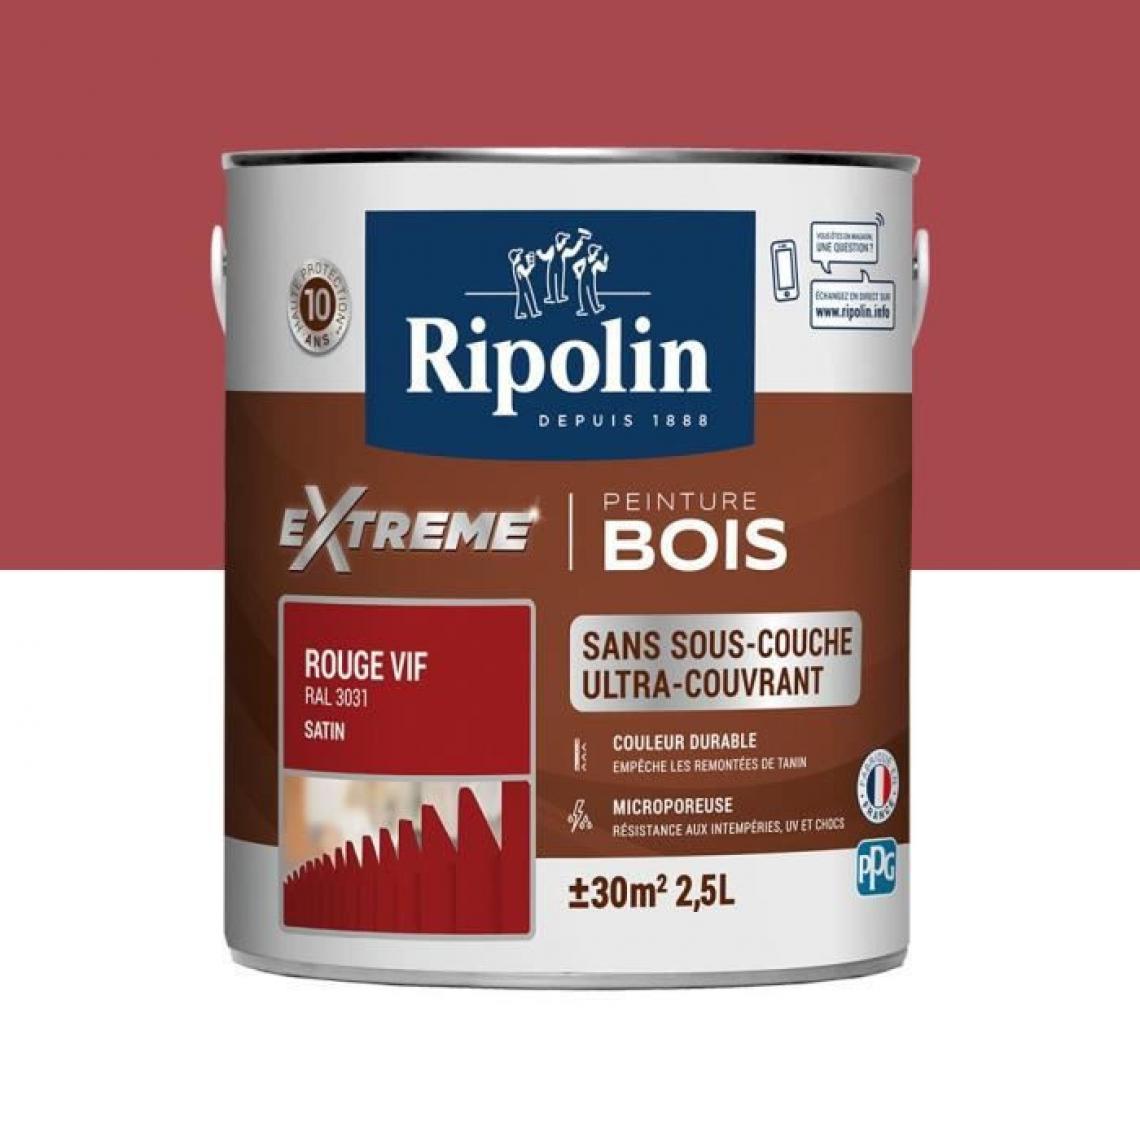 Ripolin - RIPOLIN Peinture pour pour Bois Interieur + Exterieur - Rouge Vif Ral 3031 Satin, 2,5L - Peinture intérieure